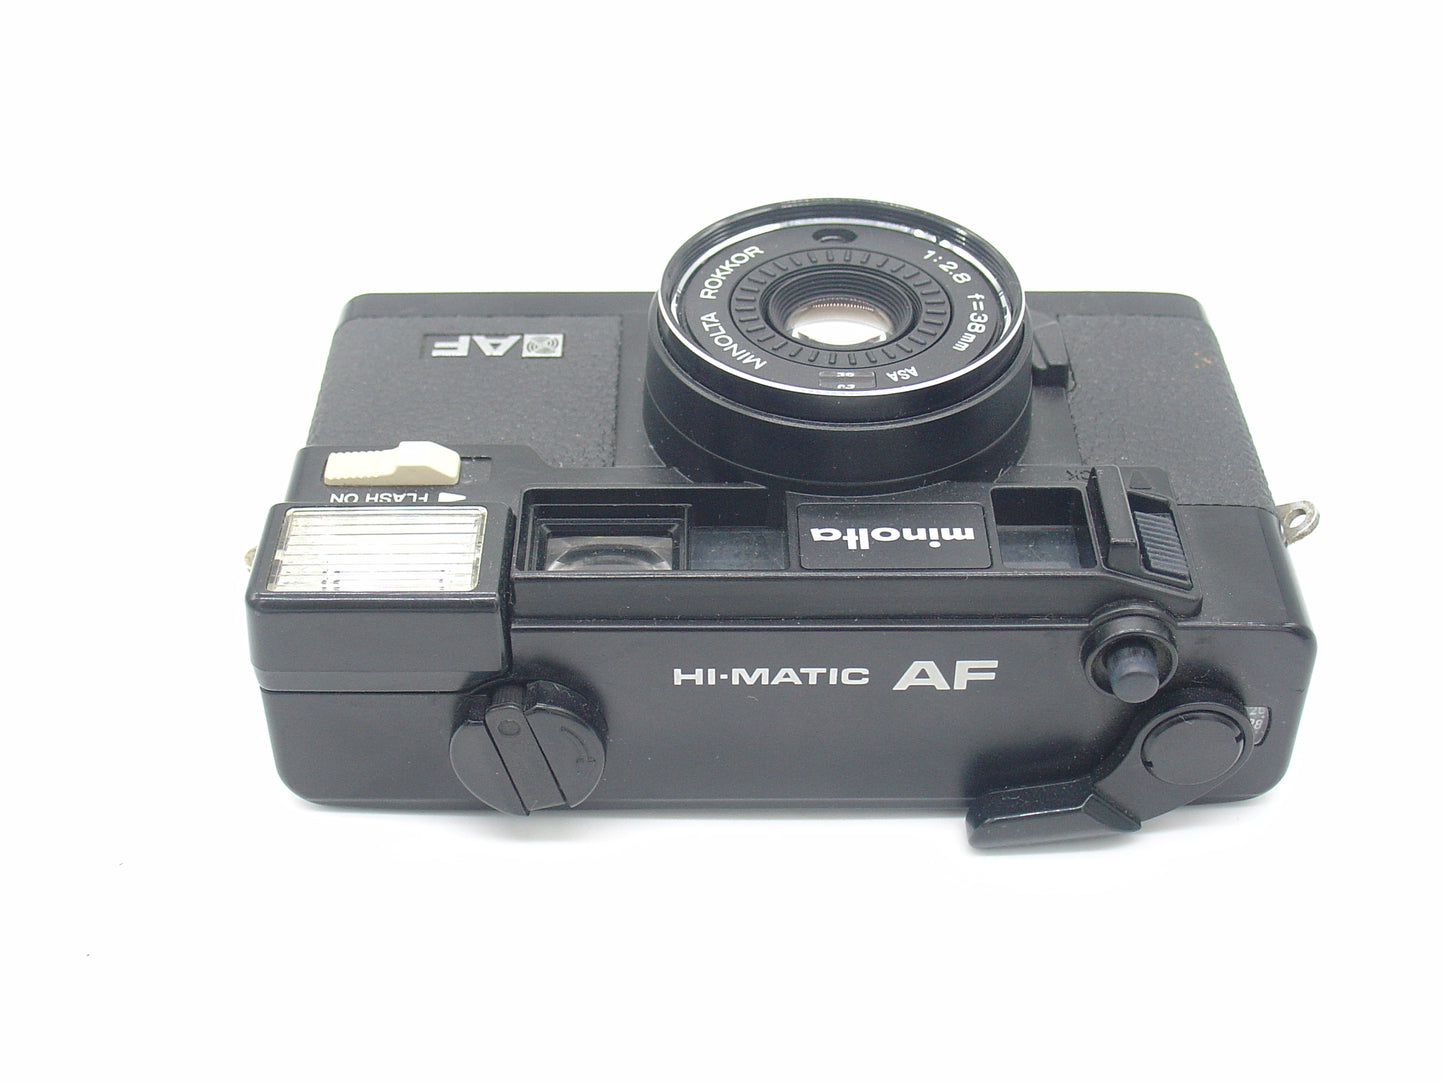 Minolta Hi-Matic AF retro point-and-shoot camera